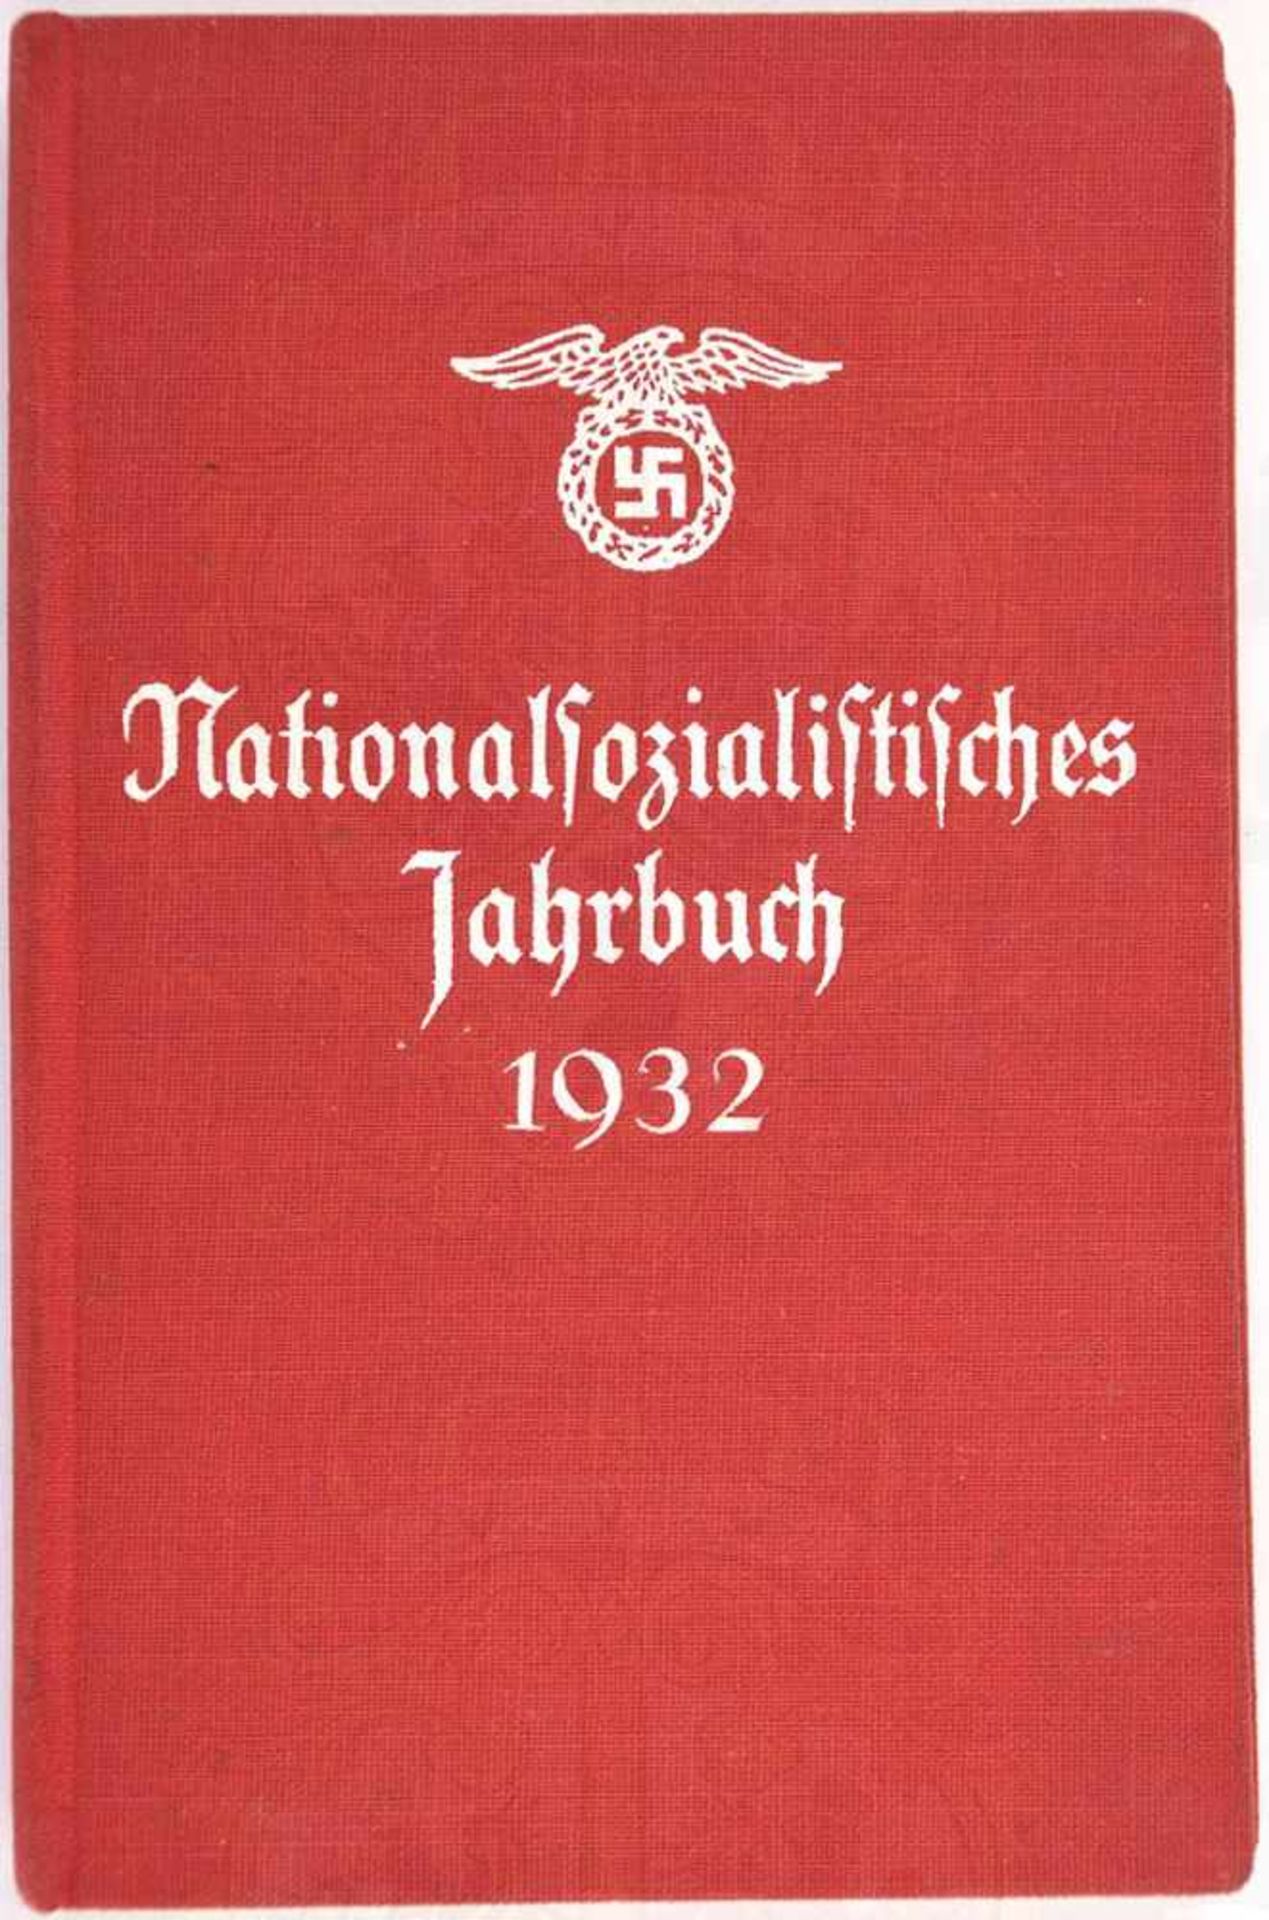 NATIONALSOZIALISTISCHES JAHRBUCH 1932, Franz Eher Verlag München, 320 S., Ehrentafel, Kalendarium